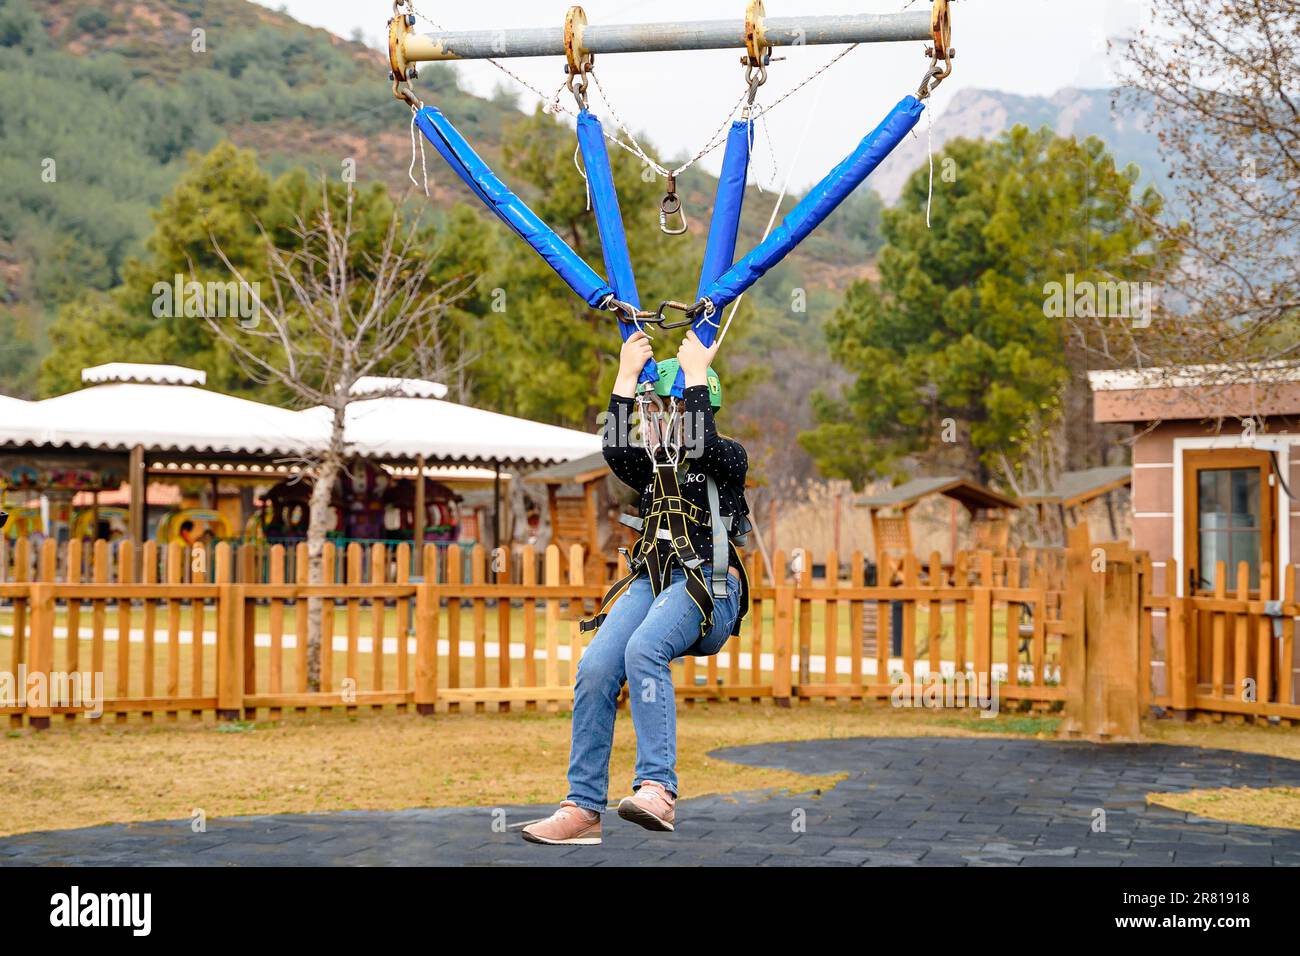 Une adolescente à l'adolescence, un sandow volant dans le parc d'attractions de corde. Équipement de harnais d'escalade, casque de sécurité sport vert. Course d'obstacle suspendu. Enfants enfants Banque D'Images